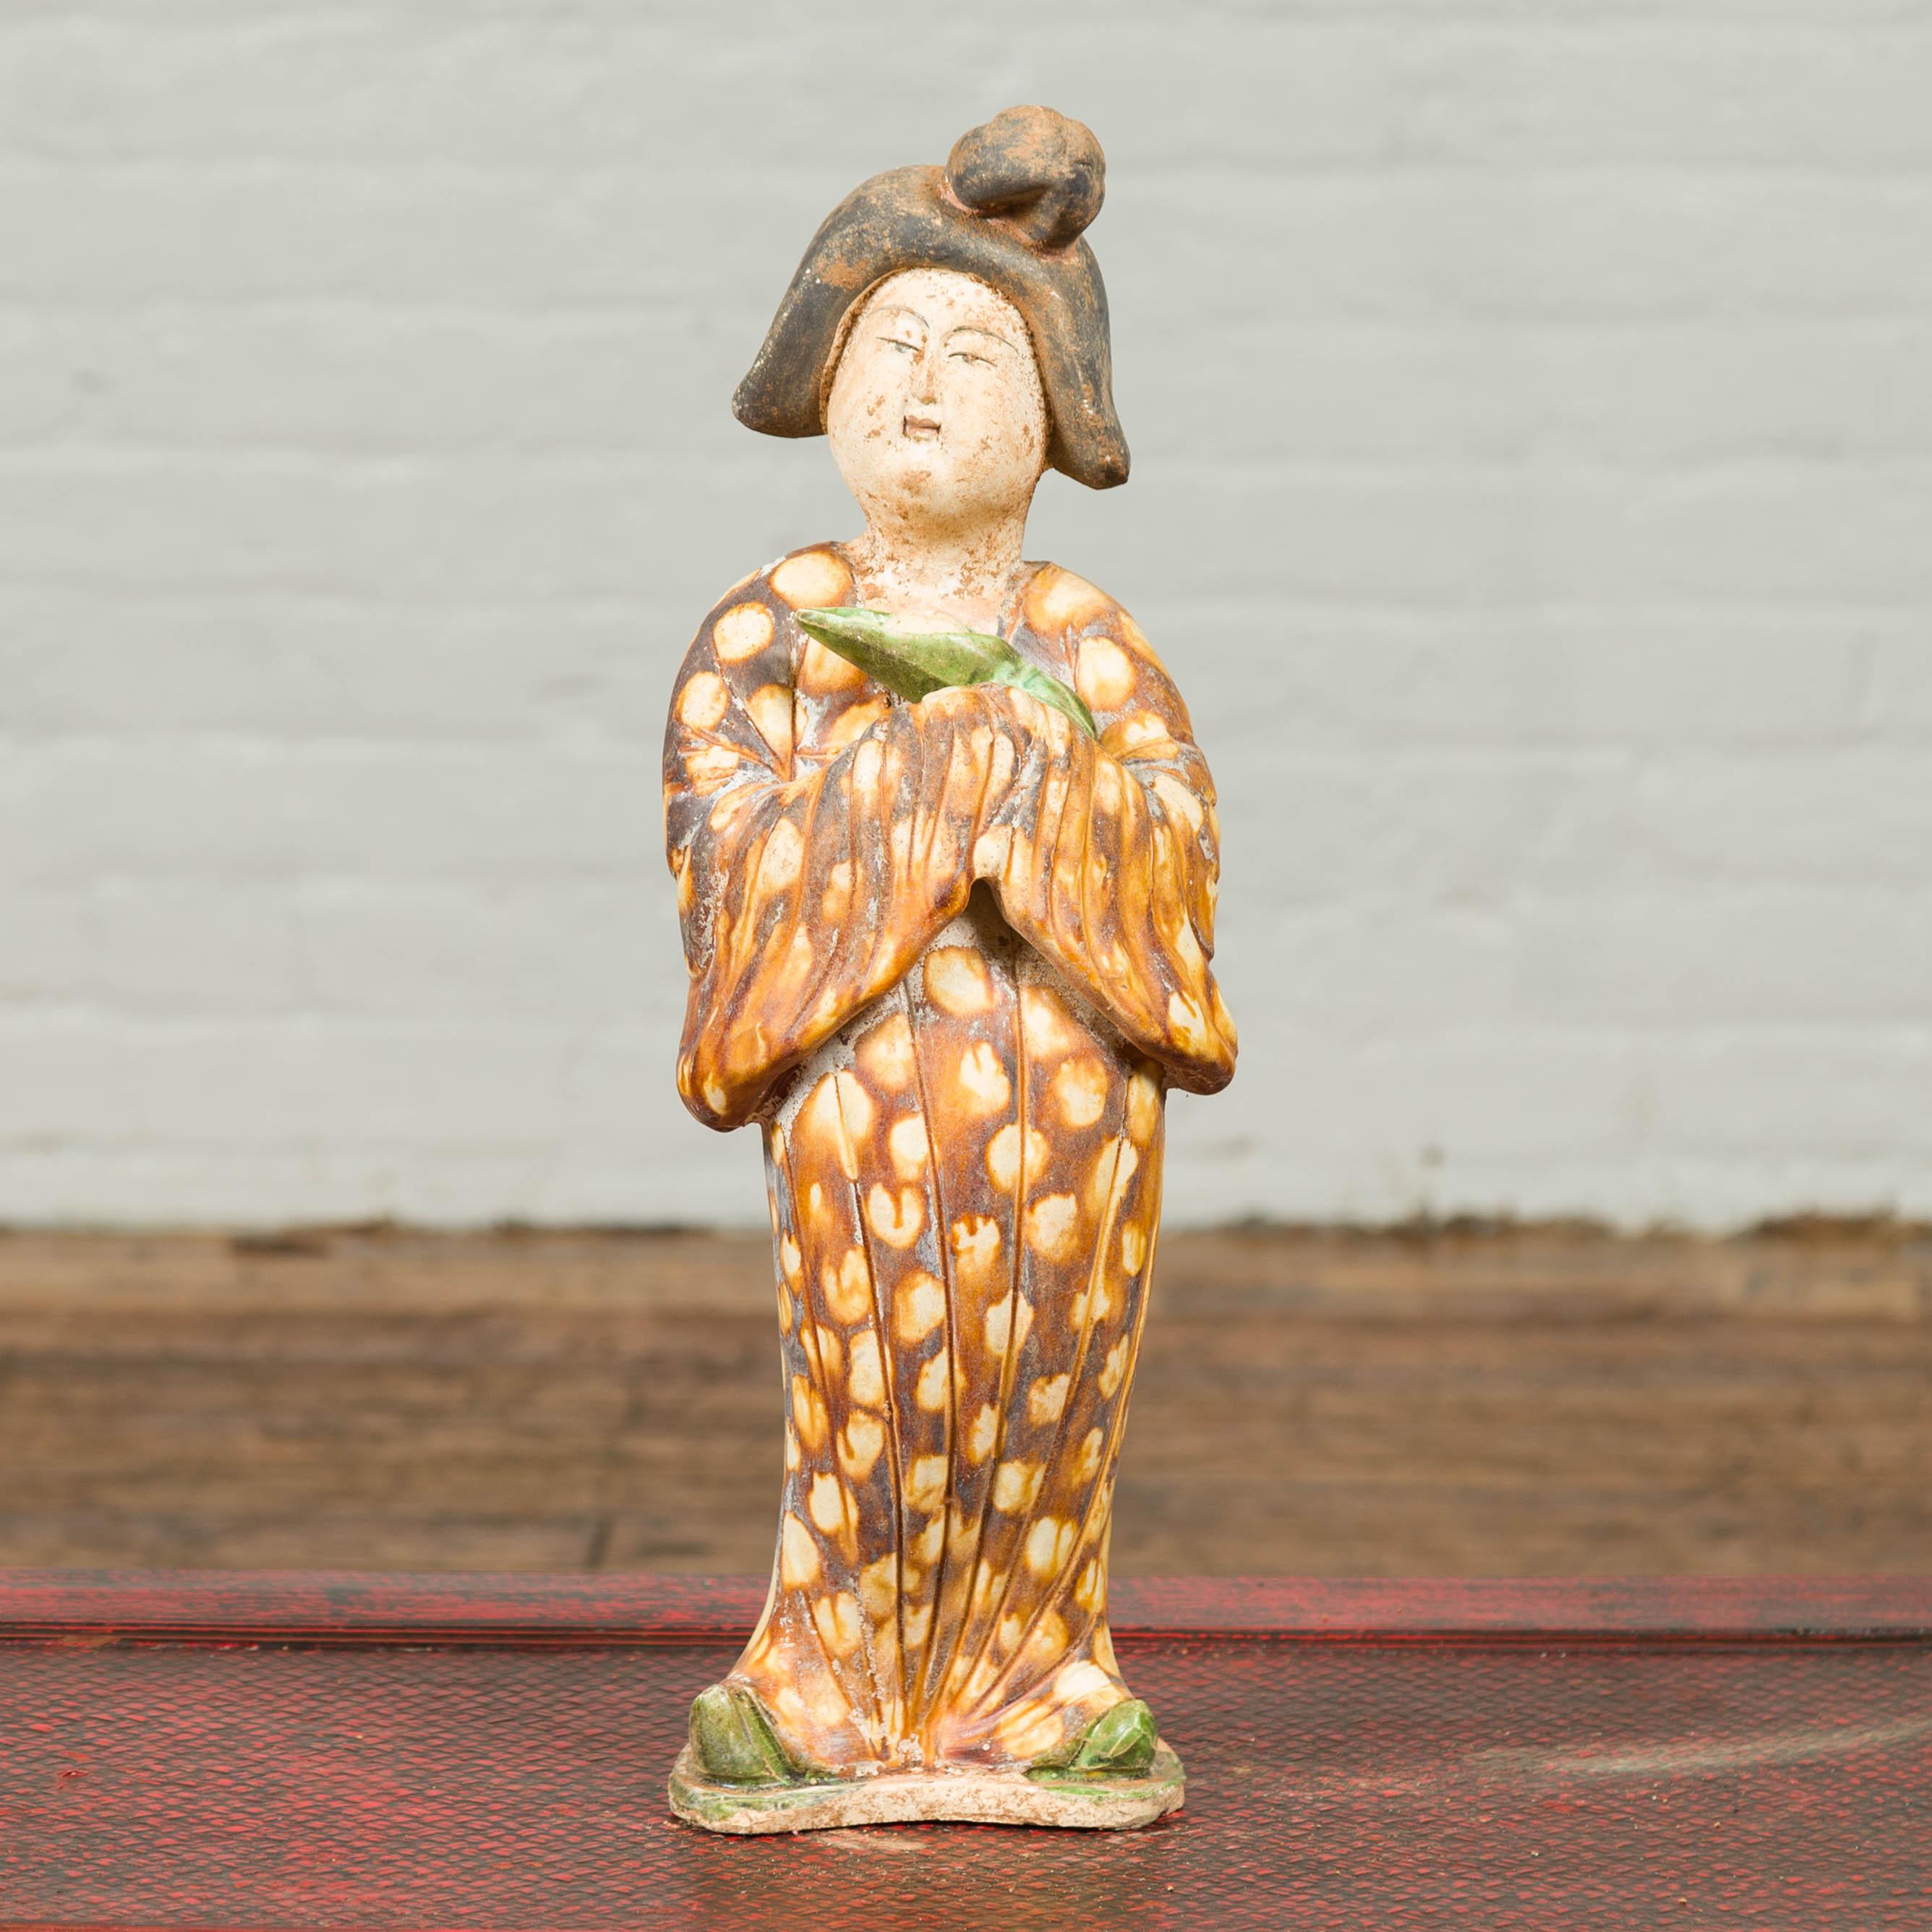 Petite statue chinoise vintage représentant une dame de la cour vêtue d'un kimono brun à motifs géométriques et tenant un bébé emmailloté. Inclinant légèrement la tête sur le côté et portant une coiffure traditionnelle, cette dame de la cour est